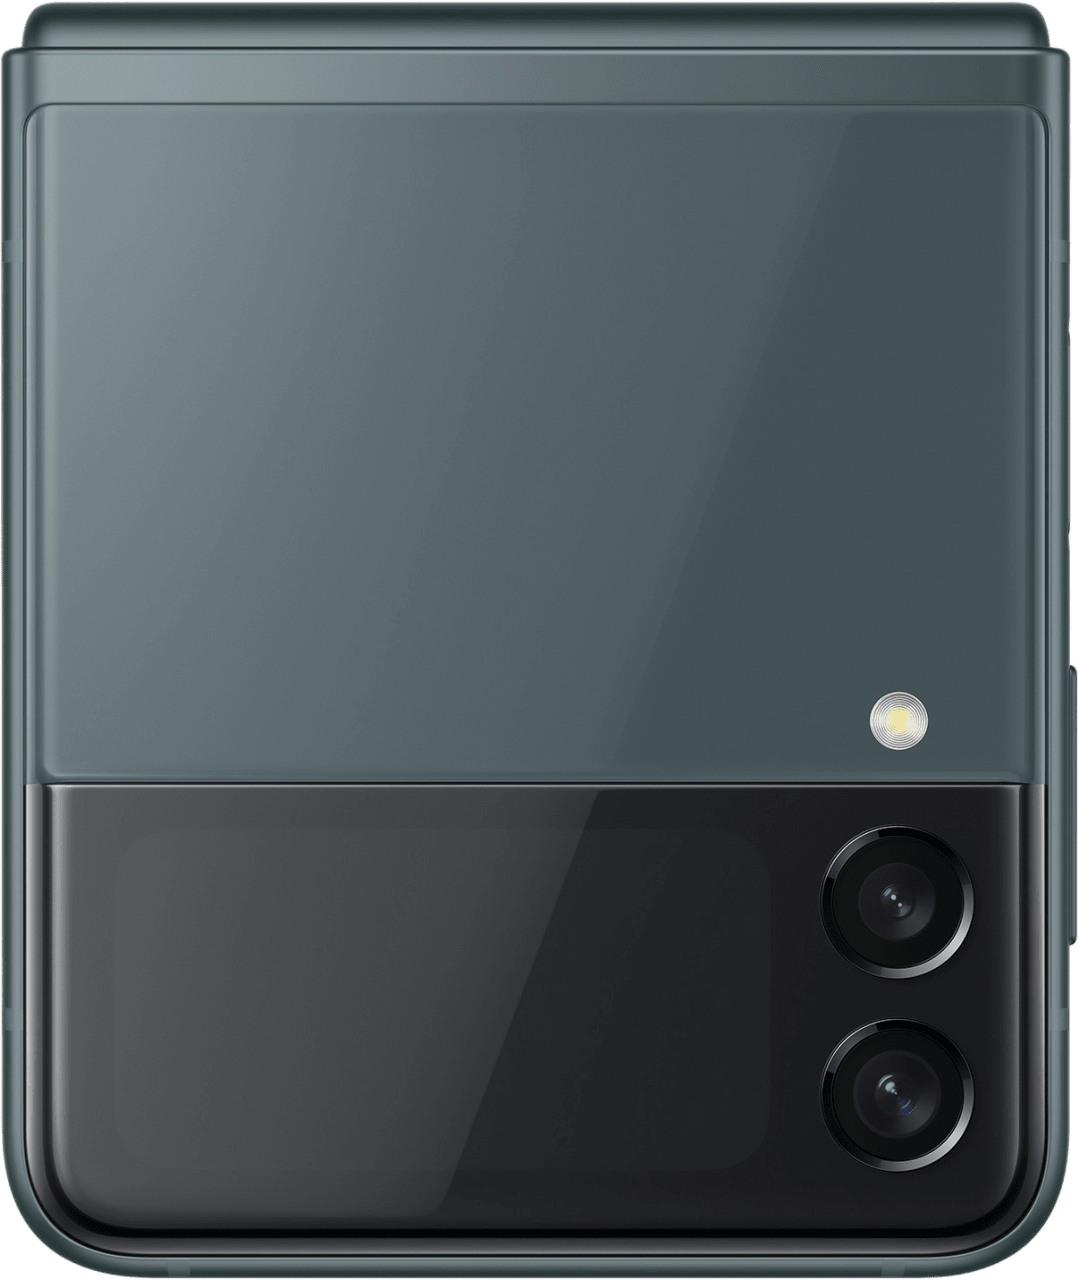 Grün Samsung Galaxy Z Flip 3 Smartphone - 128GB - Single Sim.2